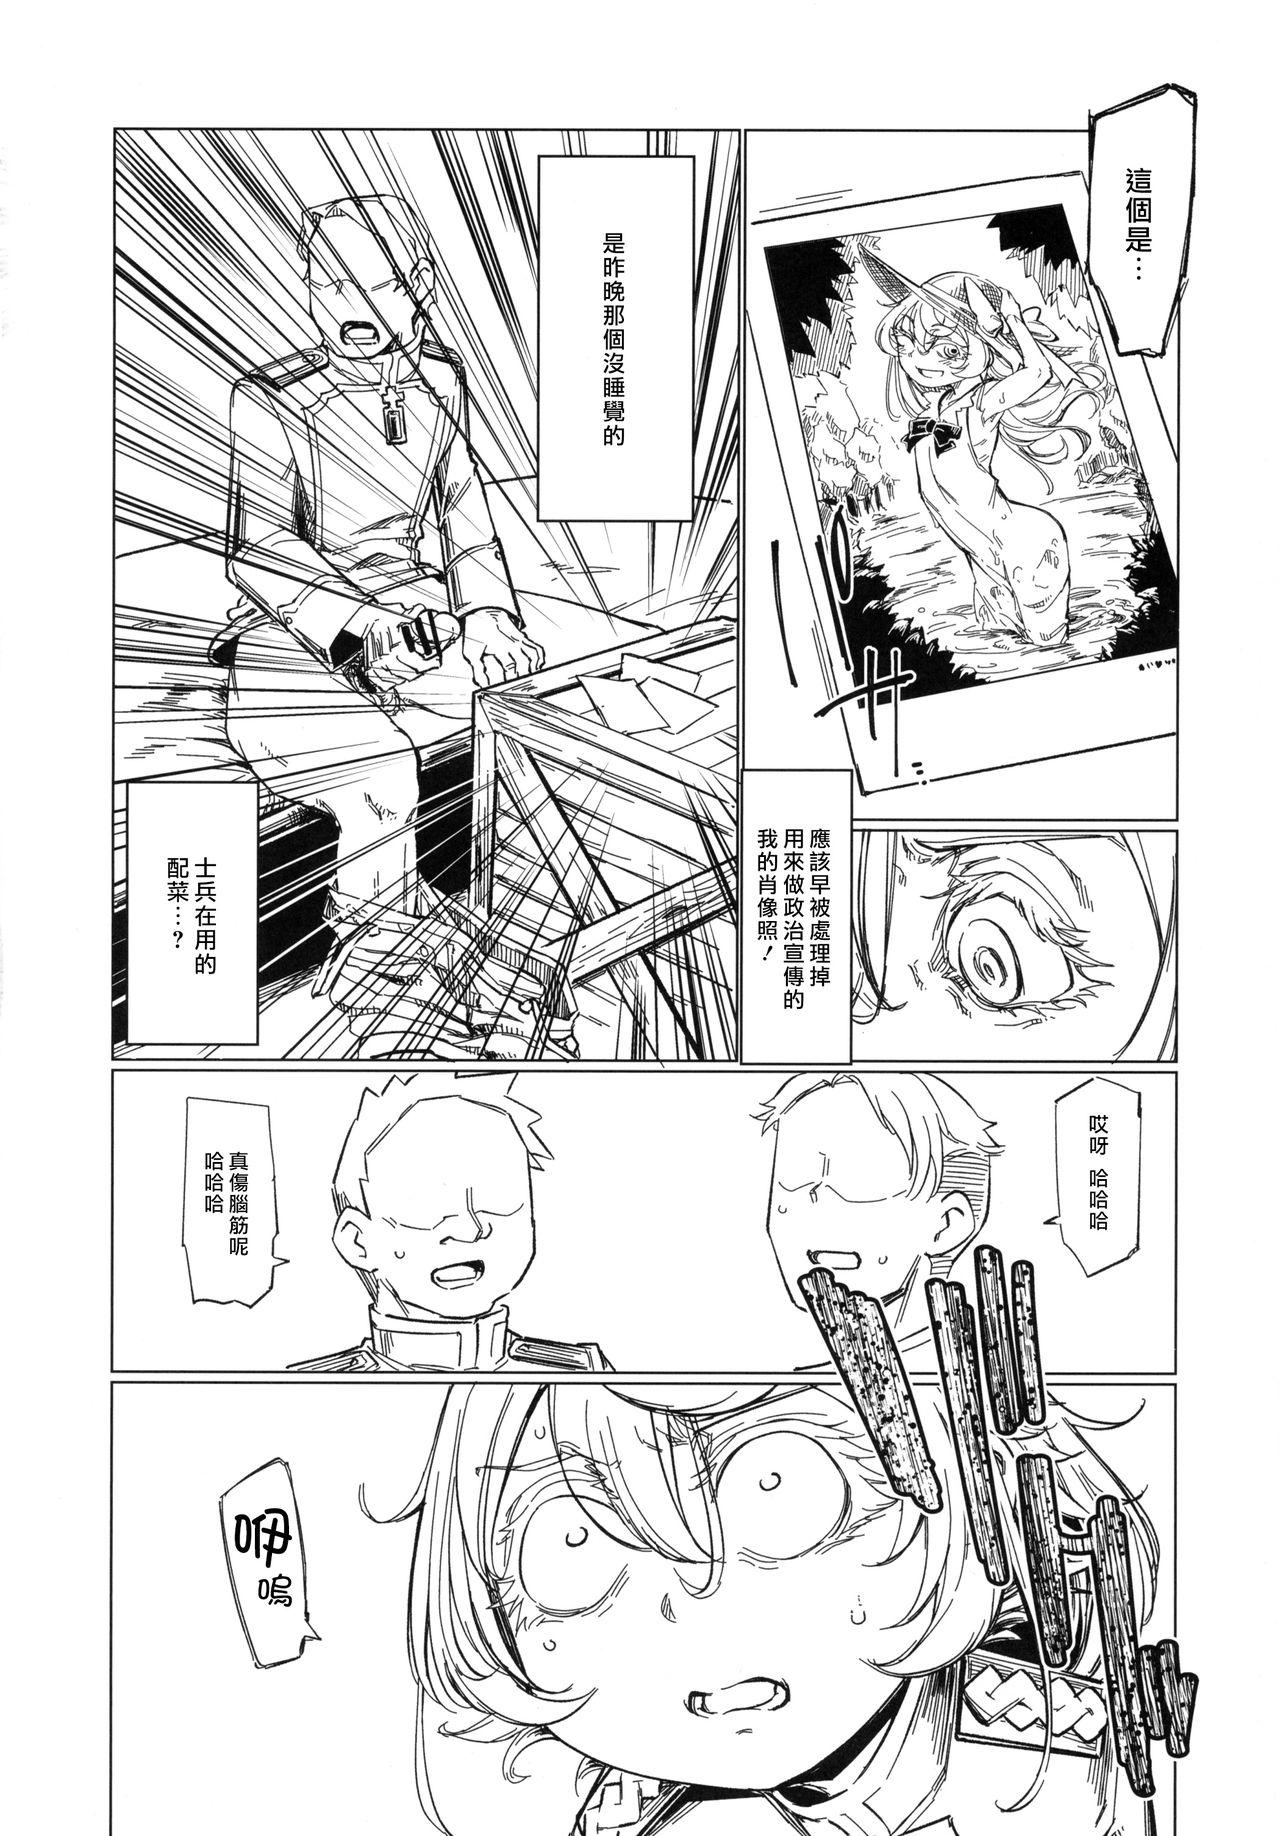 Slave Saizensen no Degrechaf Ojisan - Youjo senki Cdmx - Page 9